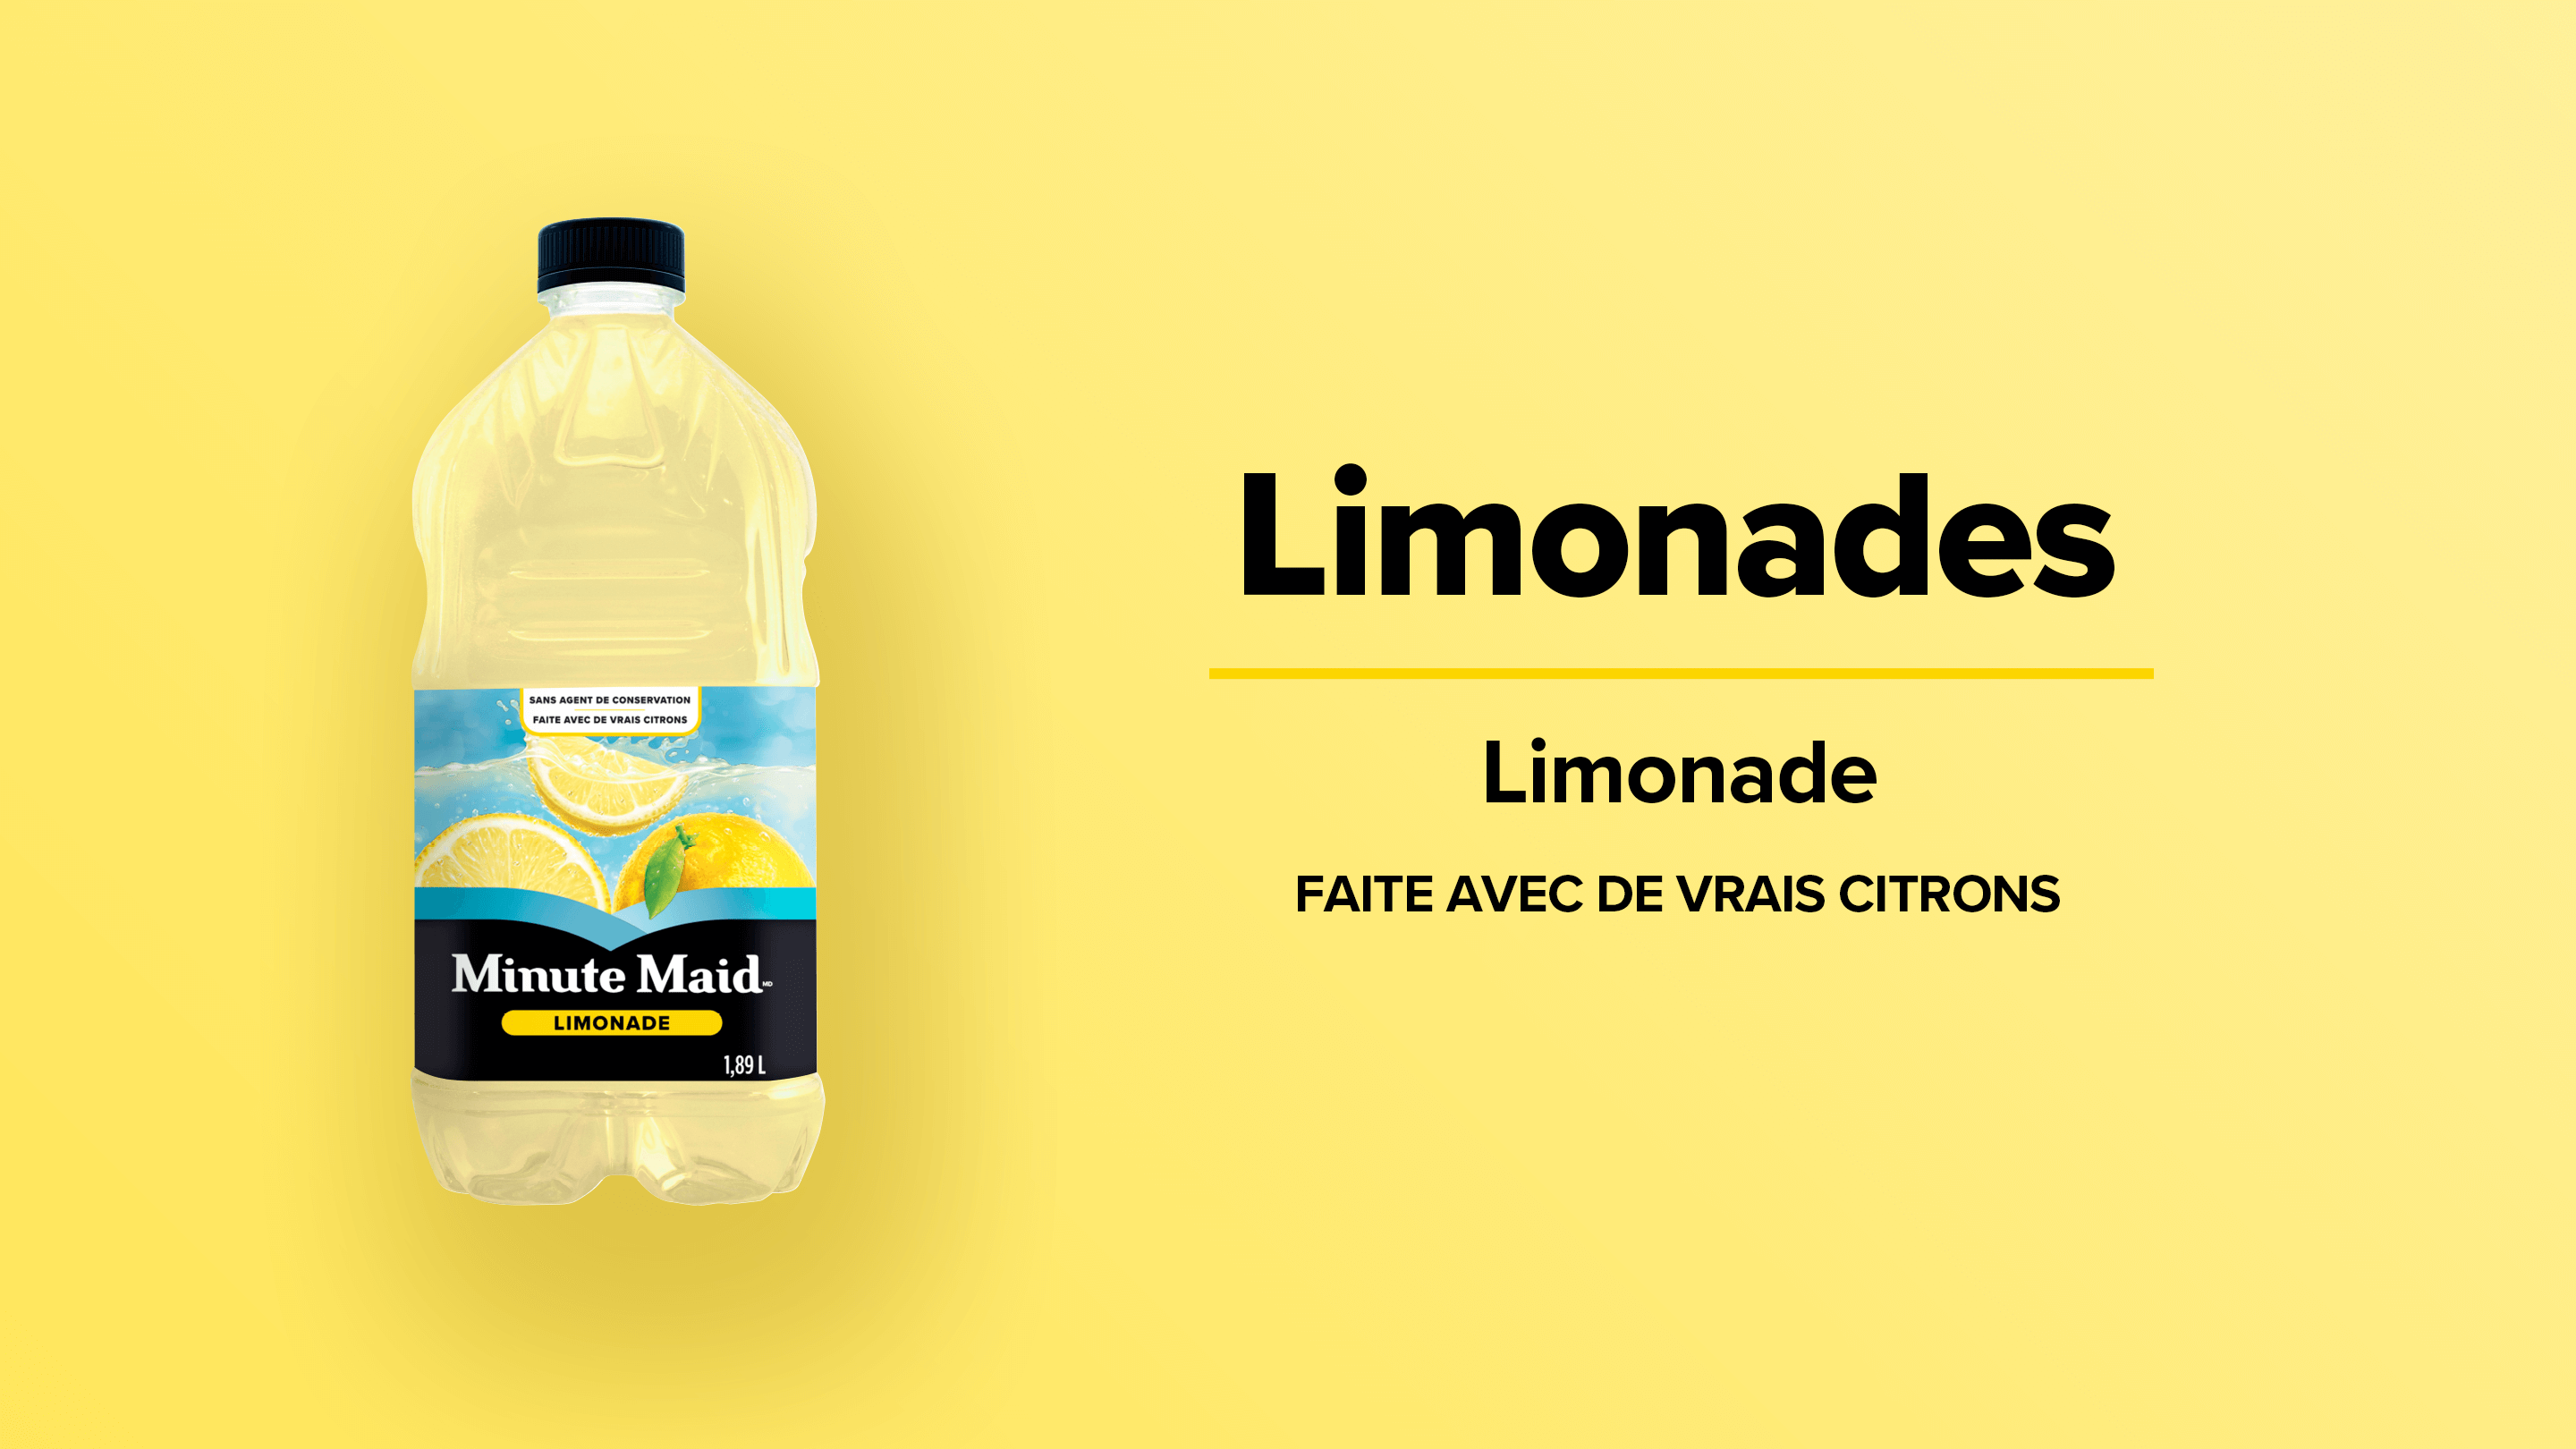 Minute Maid Limonades. Limonade. Faite avec de vrais citrons.